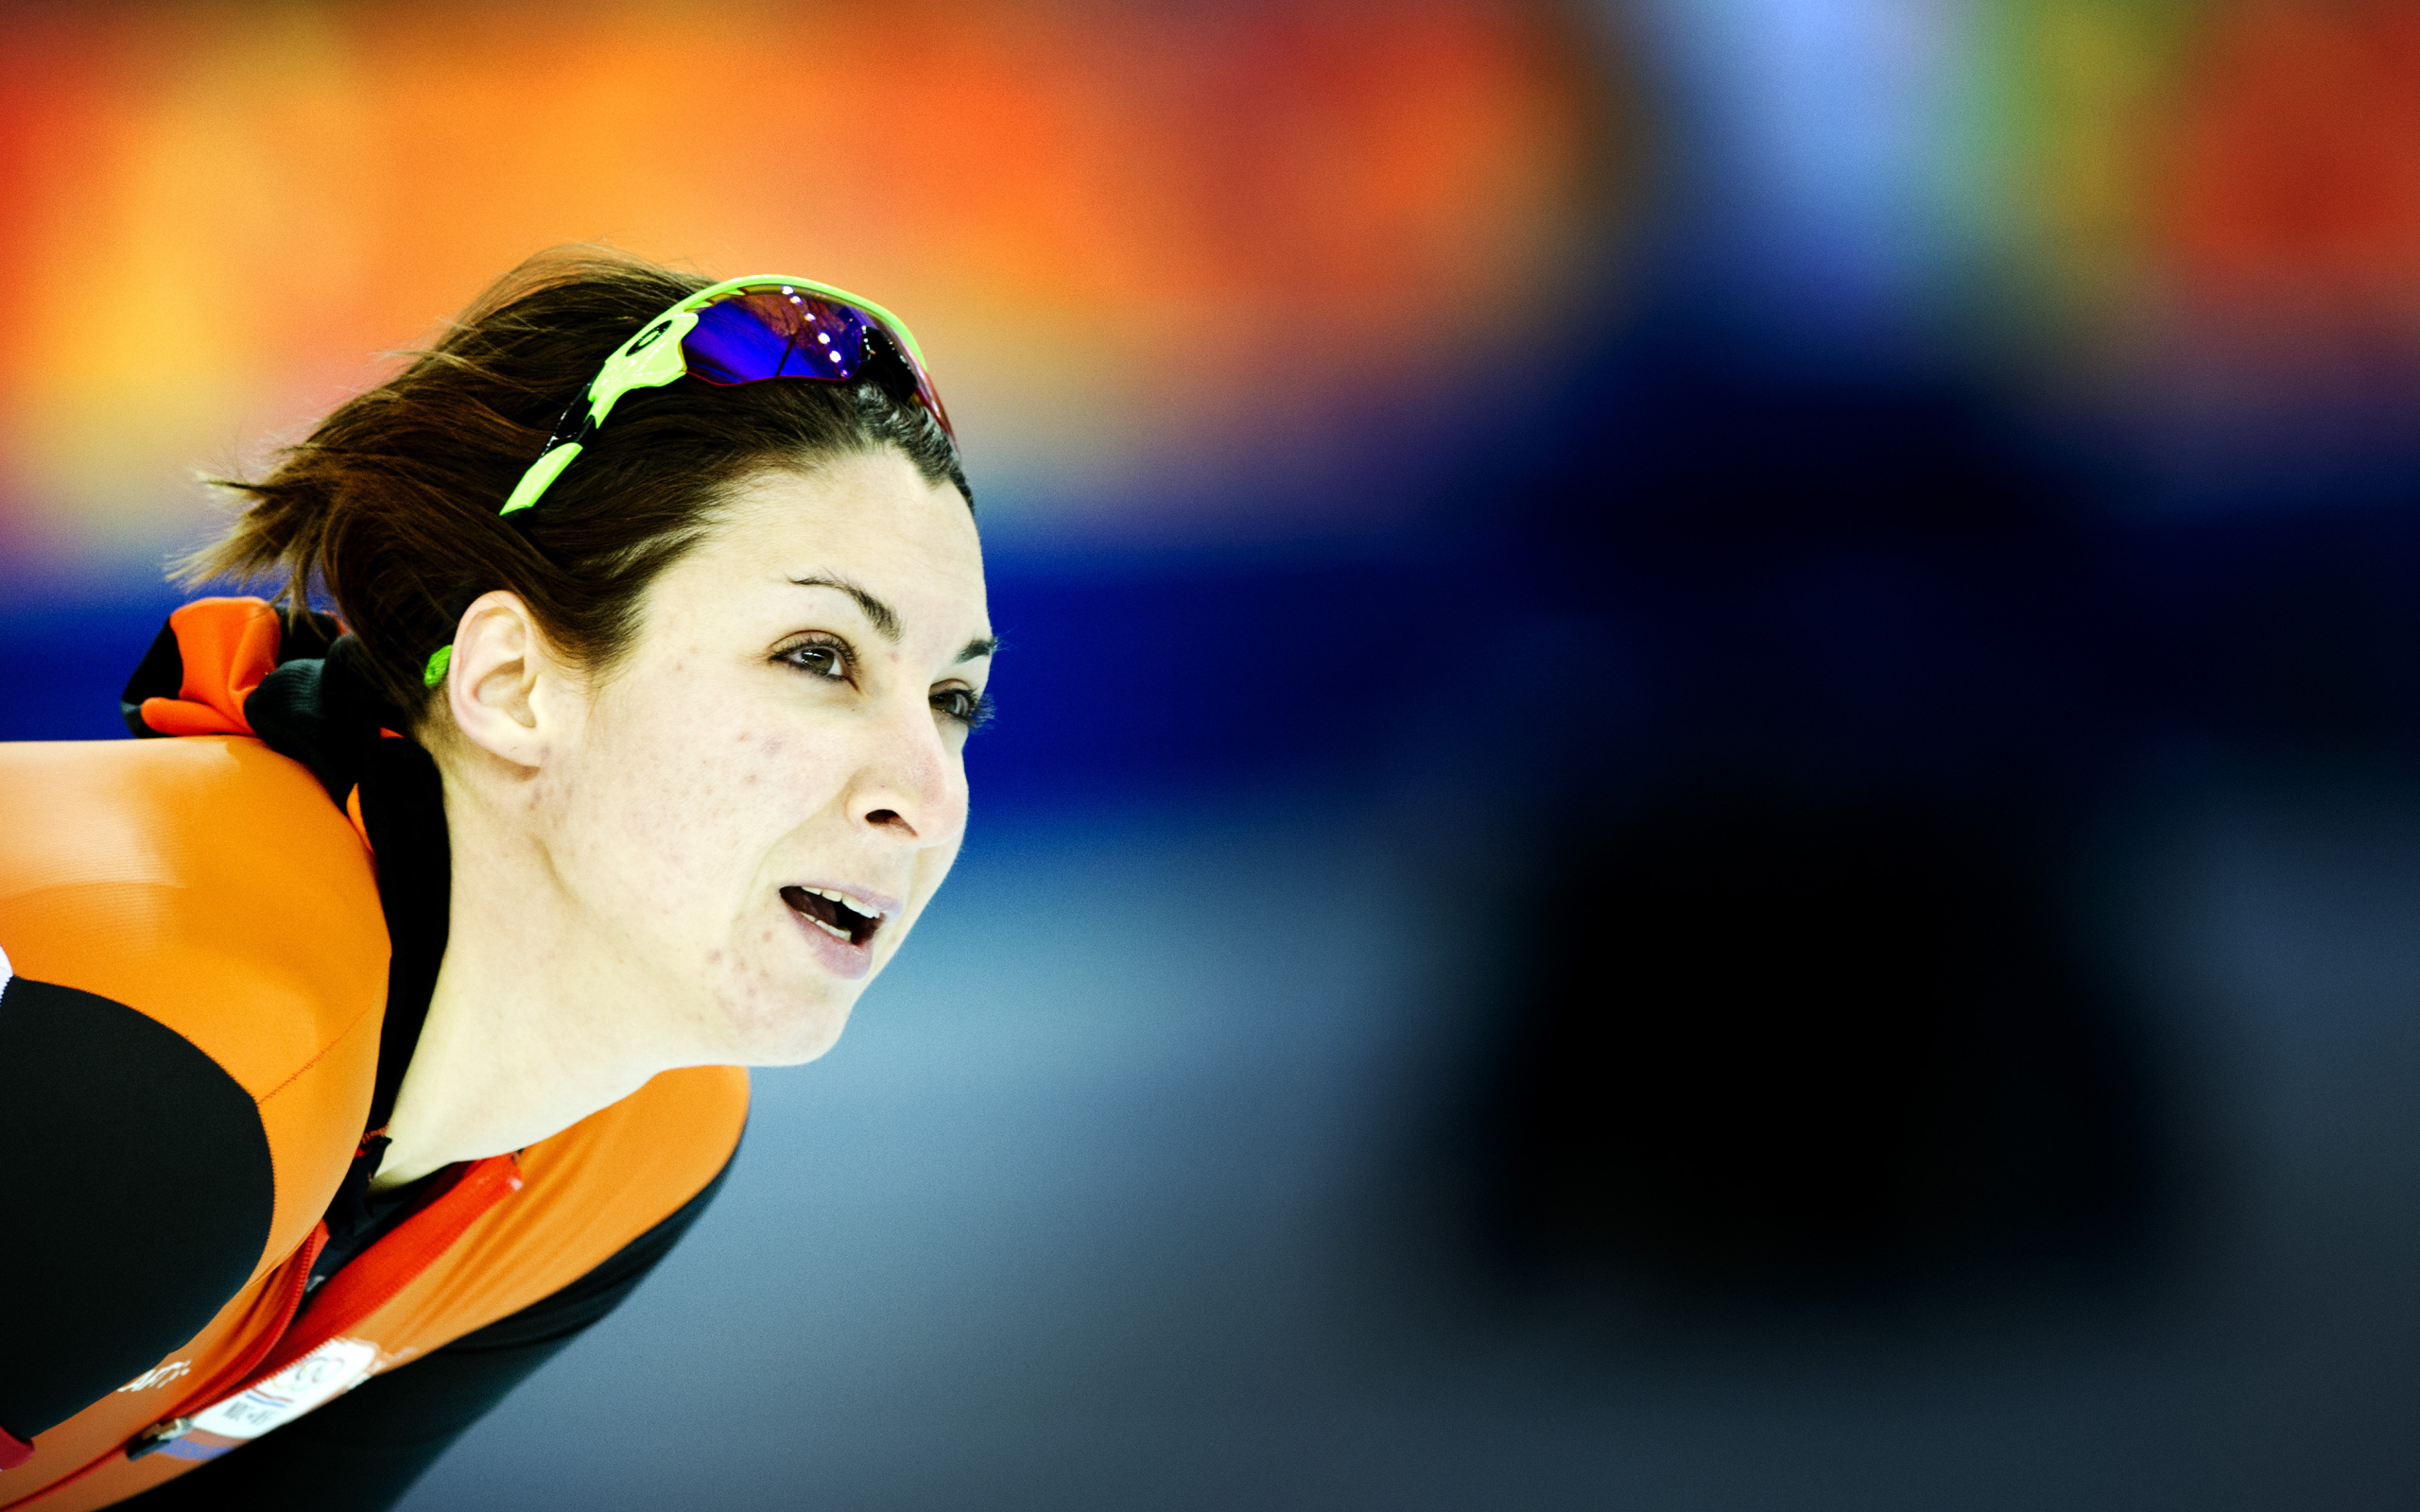 Маргот Бур из Нидерландов две бронзовые медали на олимпиаде в Сочи 2014 год